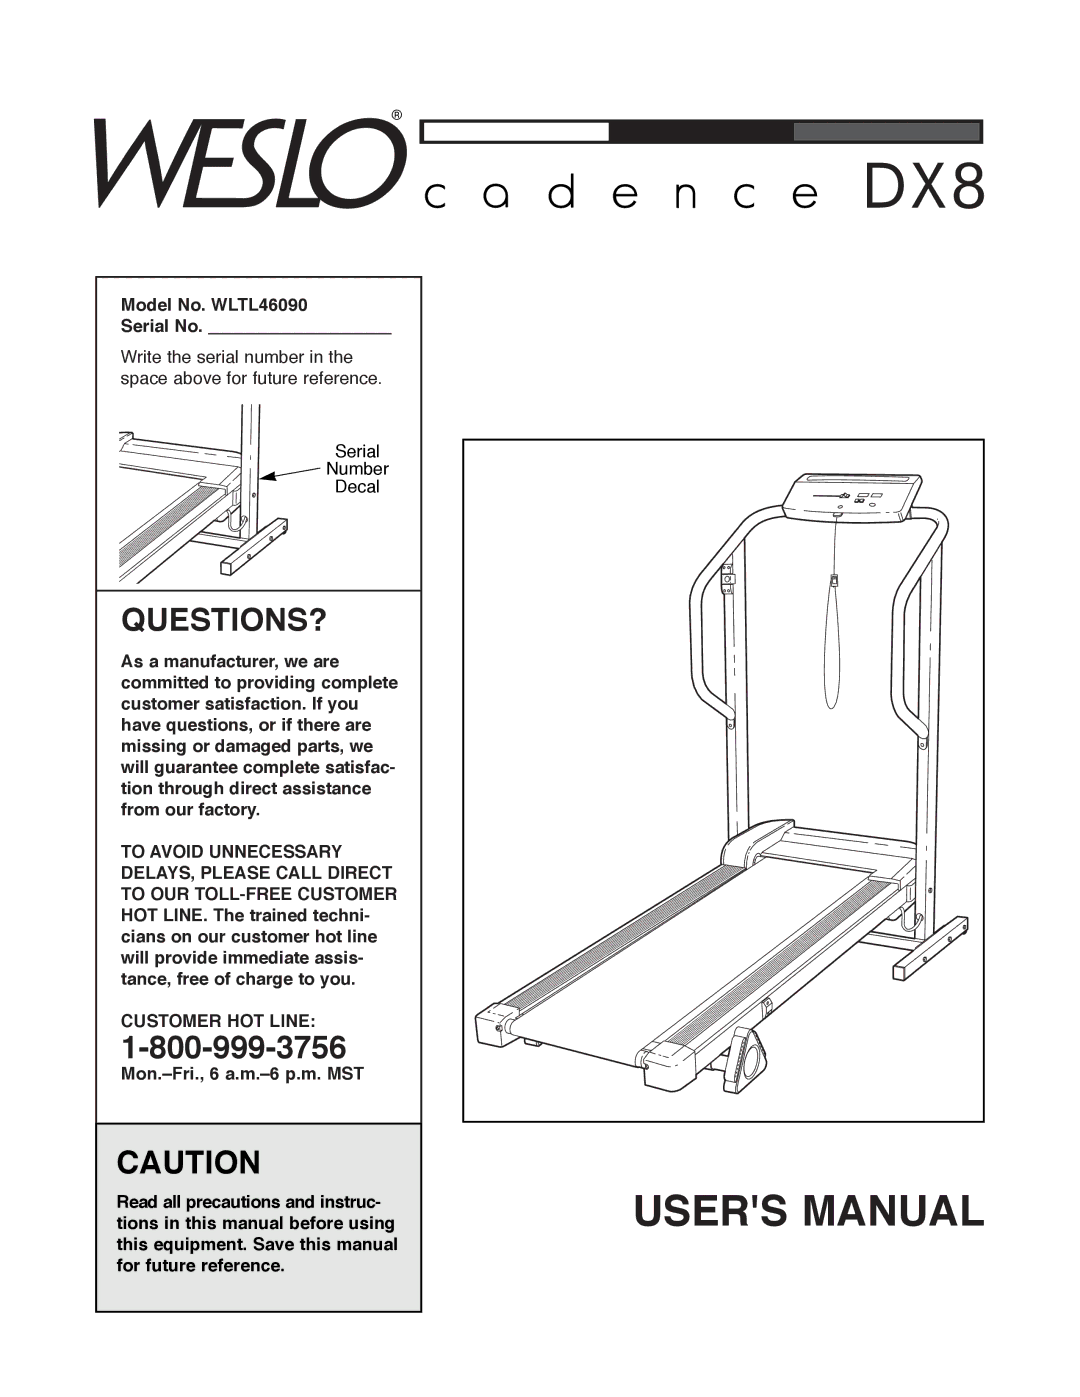 Weslo user manual Questions?, Model No. WLTL46090 Serial No, Customer HOT Line 